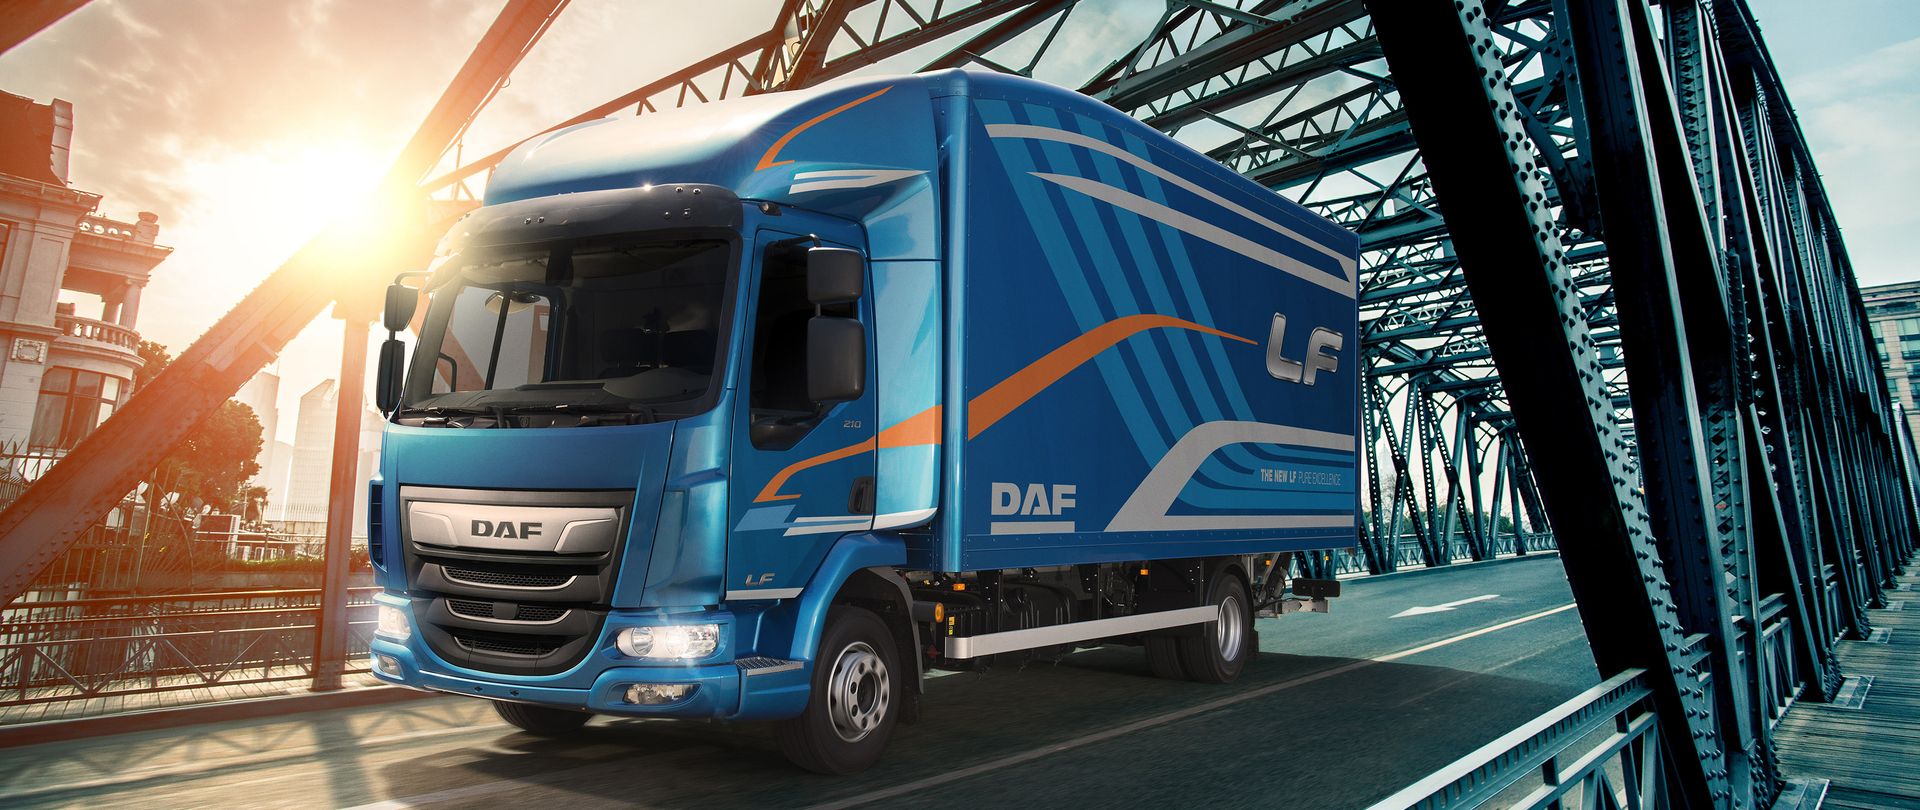 DAF The New LF Transport Efficiency visual - DAF LF